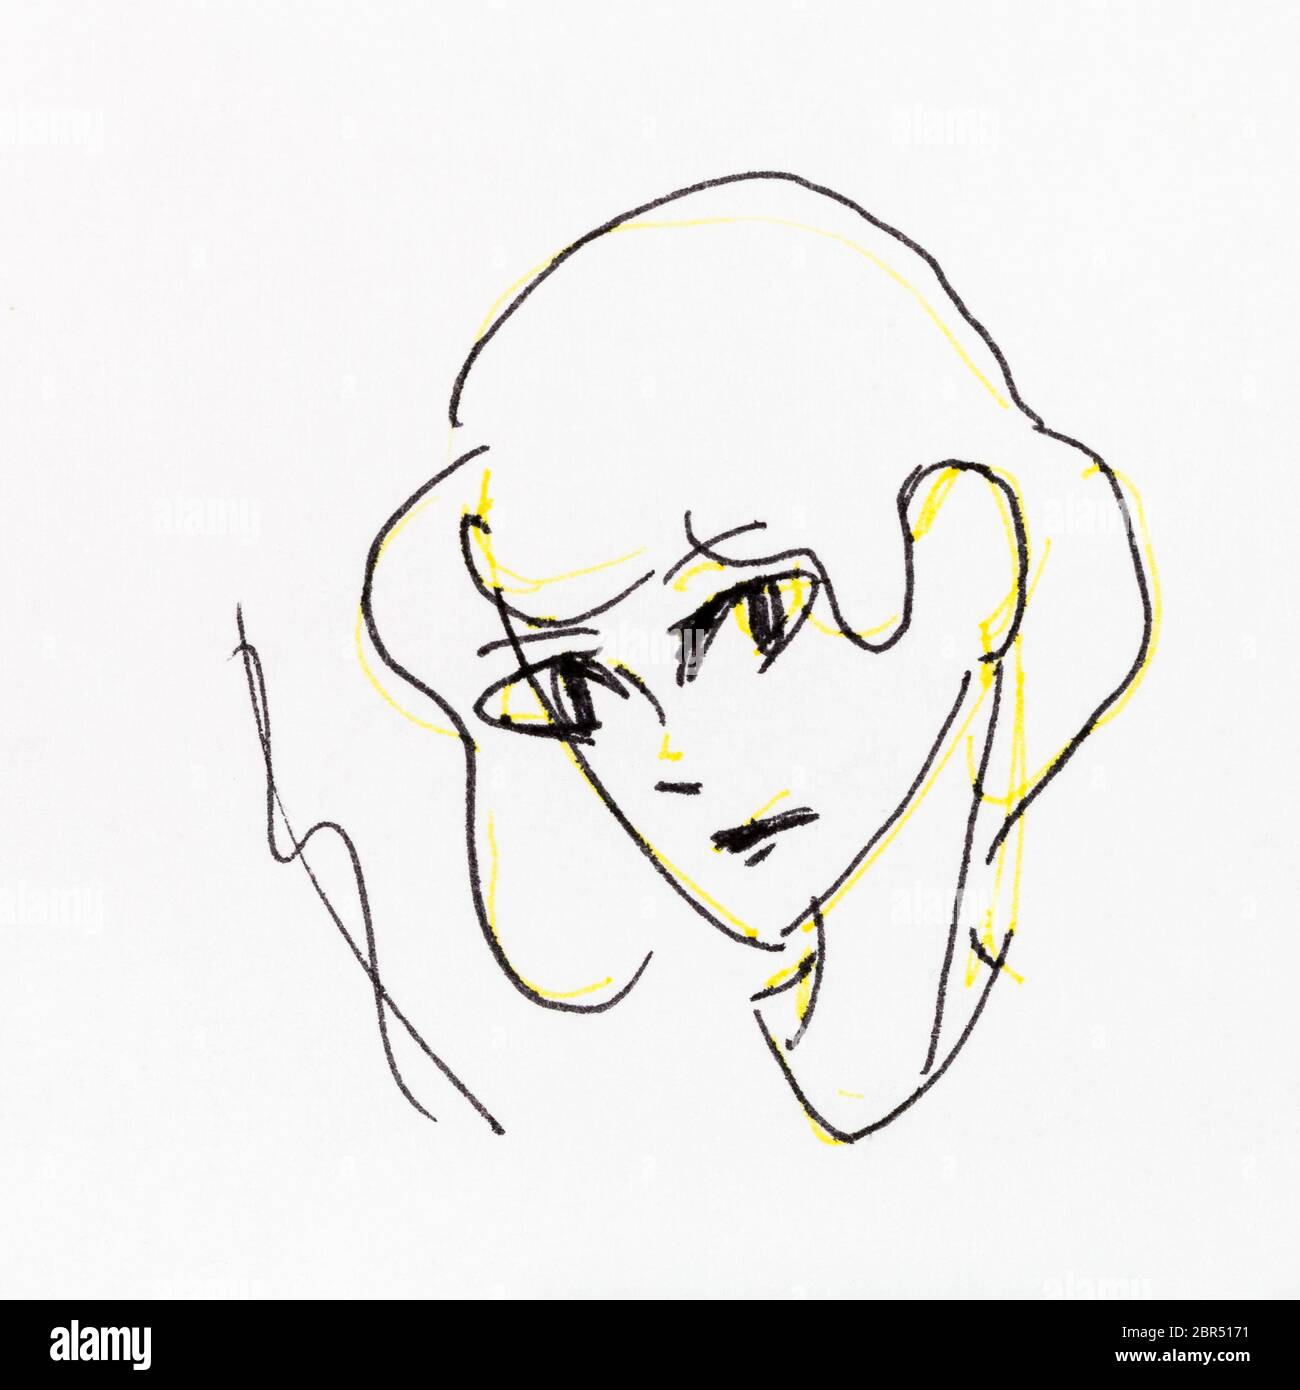 Schizzo della testa della ragazza attento disegnati a mano dalla matita gialla e inchiostro nero su carta bianca Foto Stock